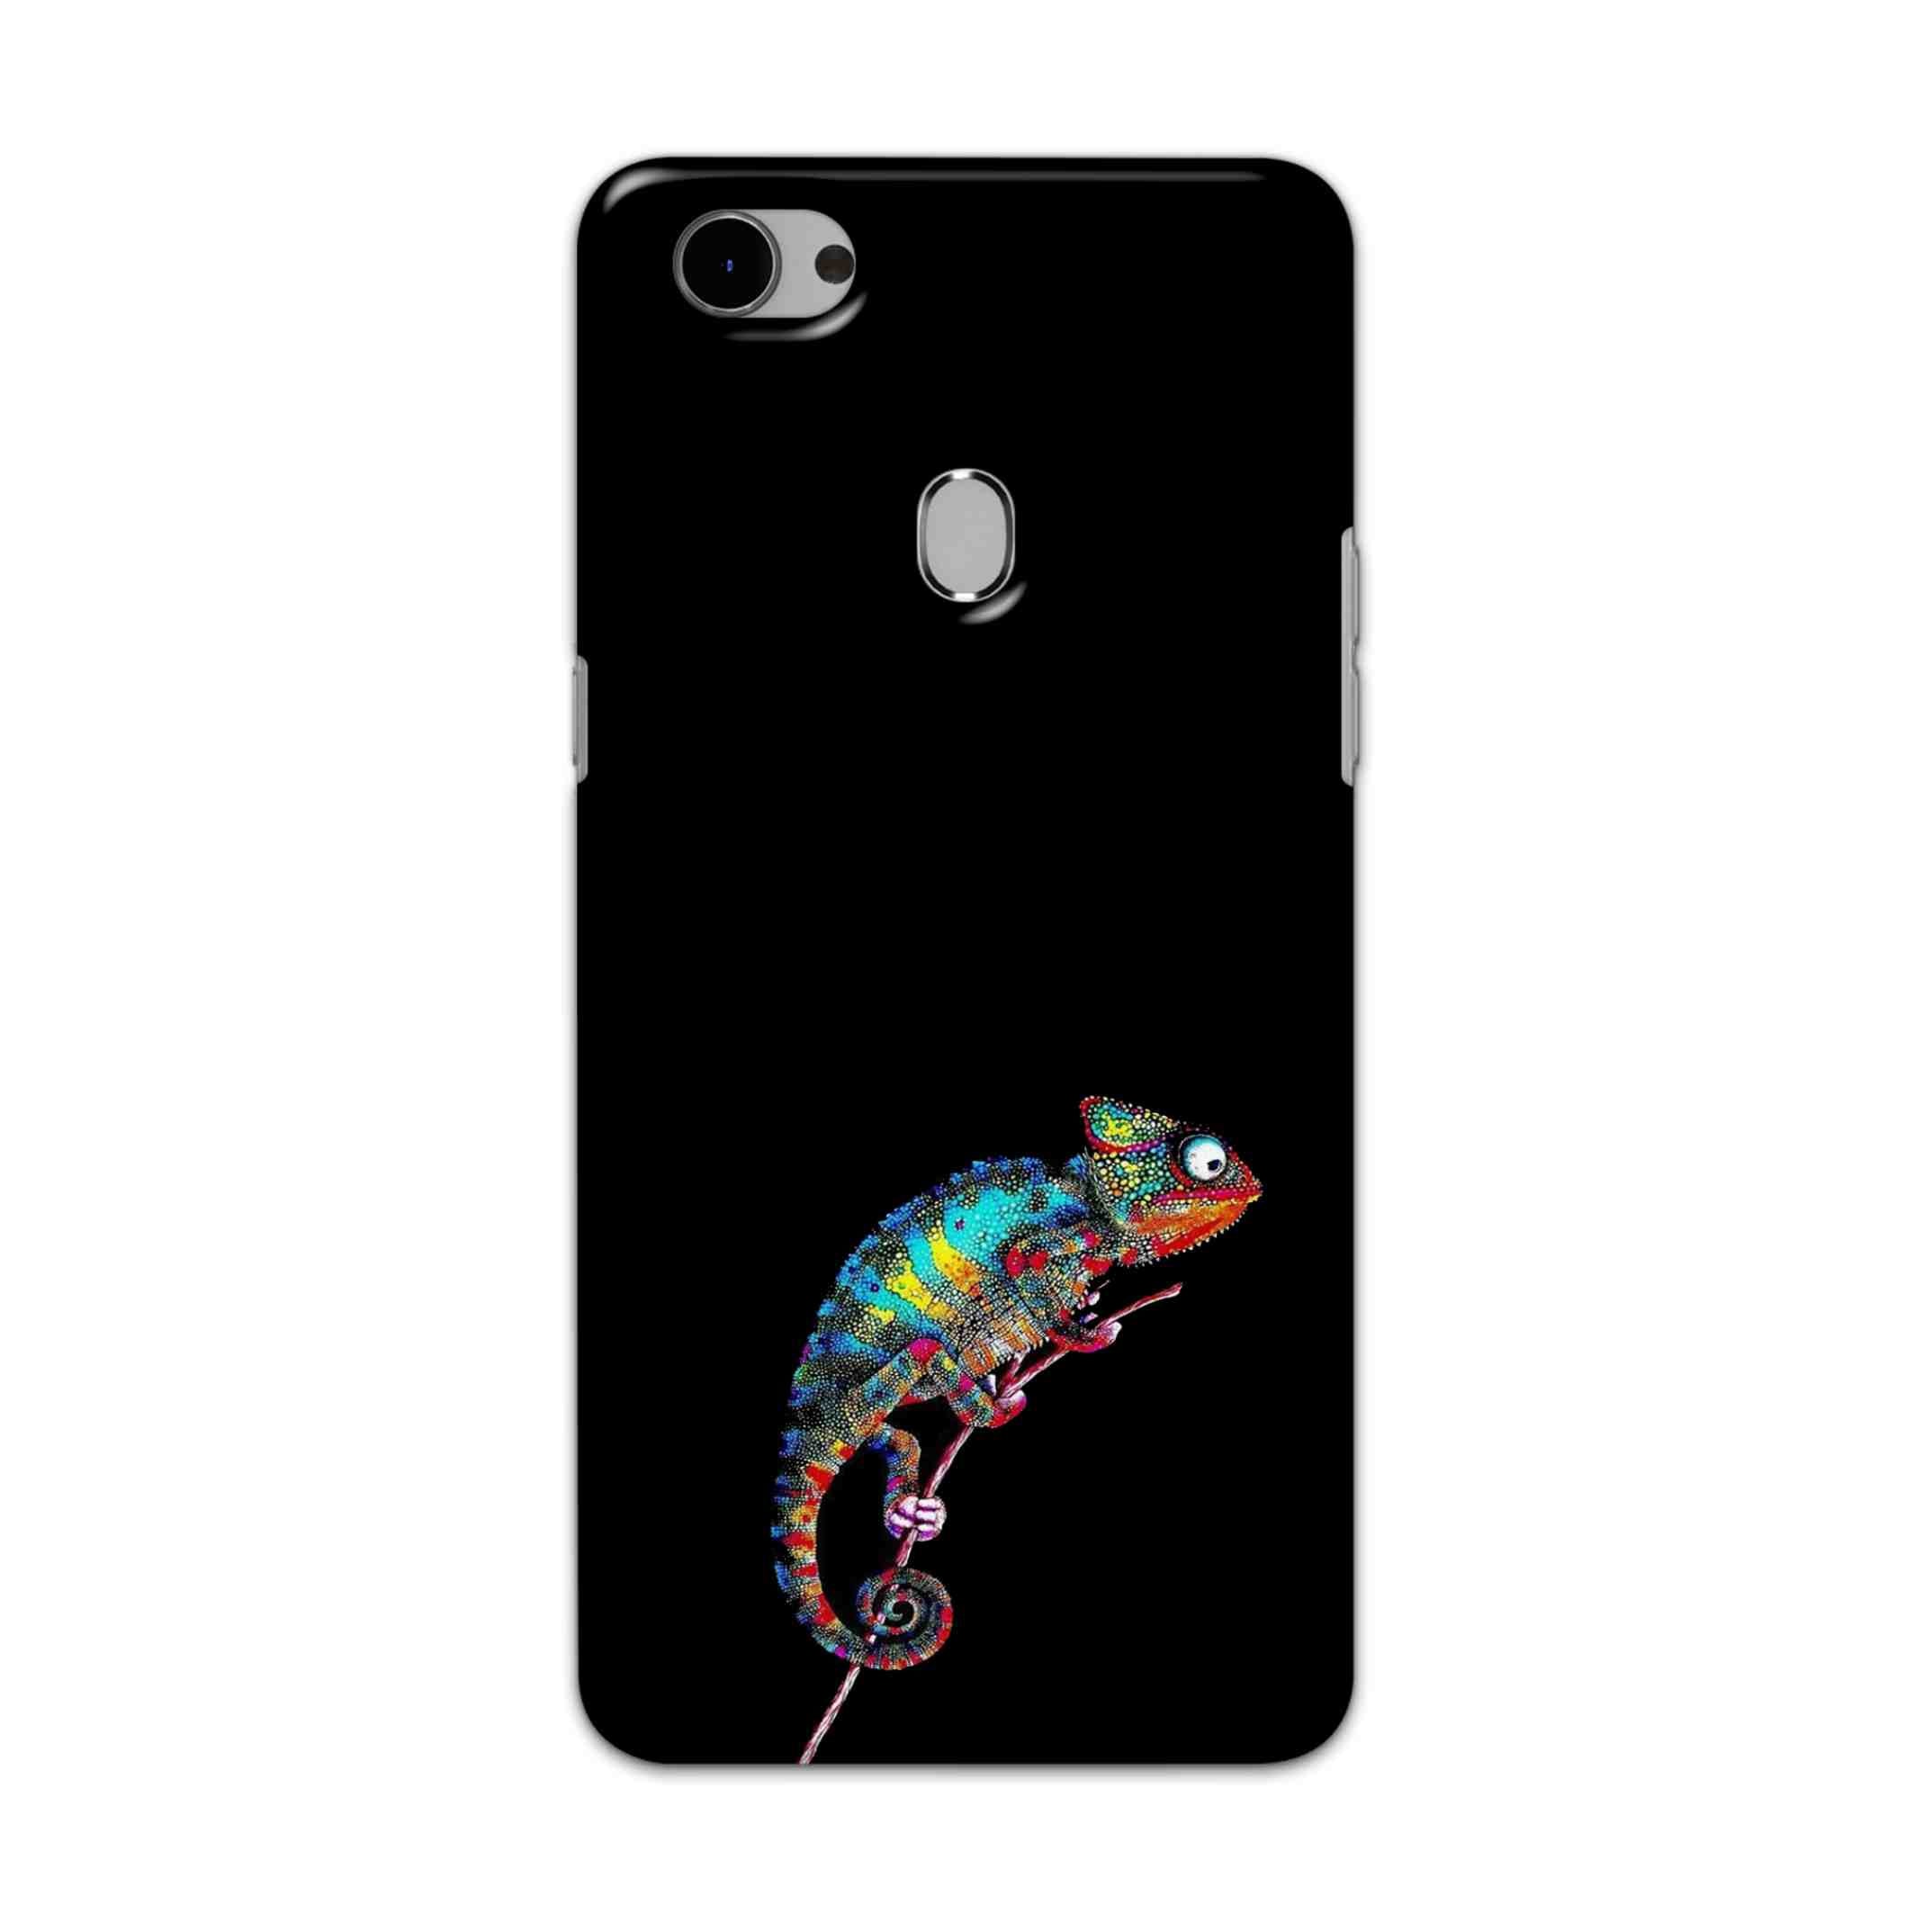 Buy Chamaeleon Hard Back Mobile Phone Case Cover For Oppo F7 Online